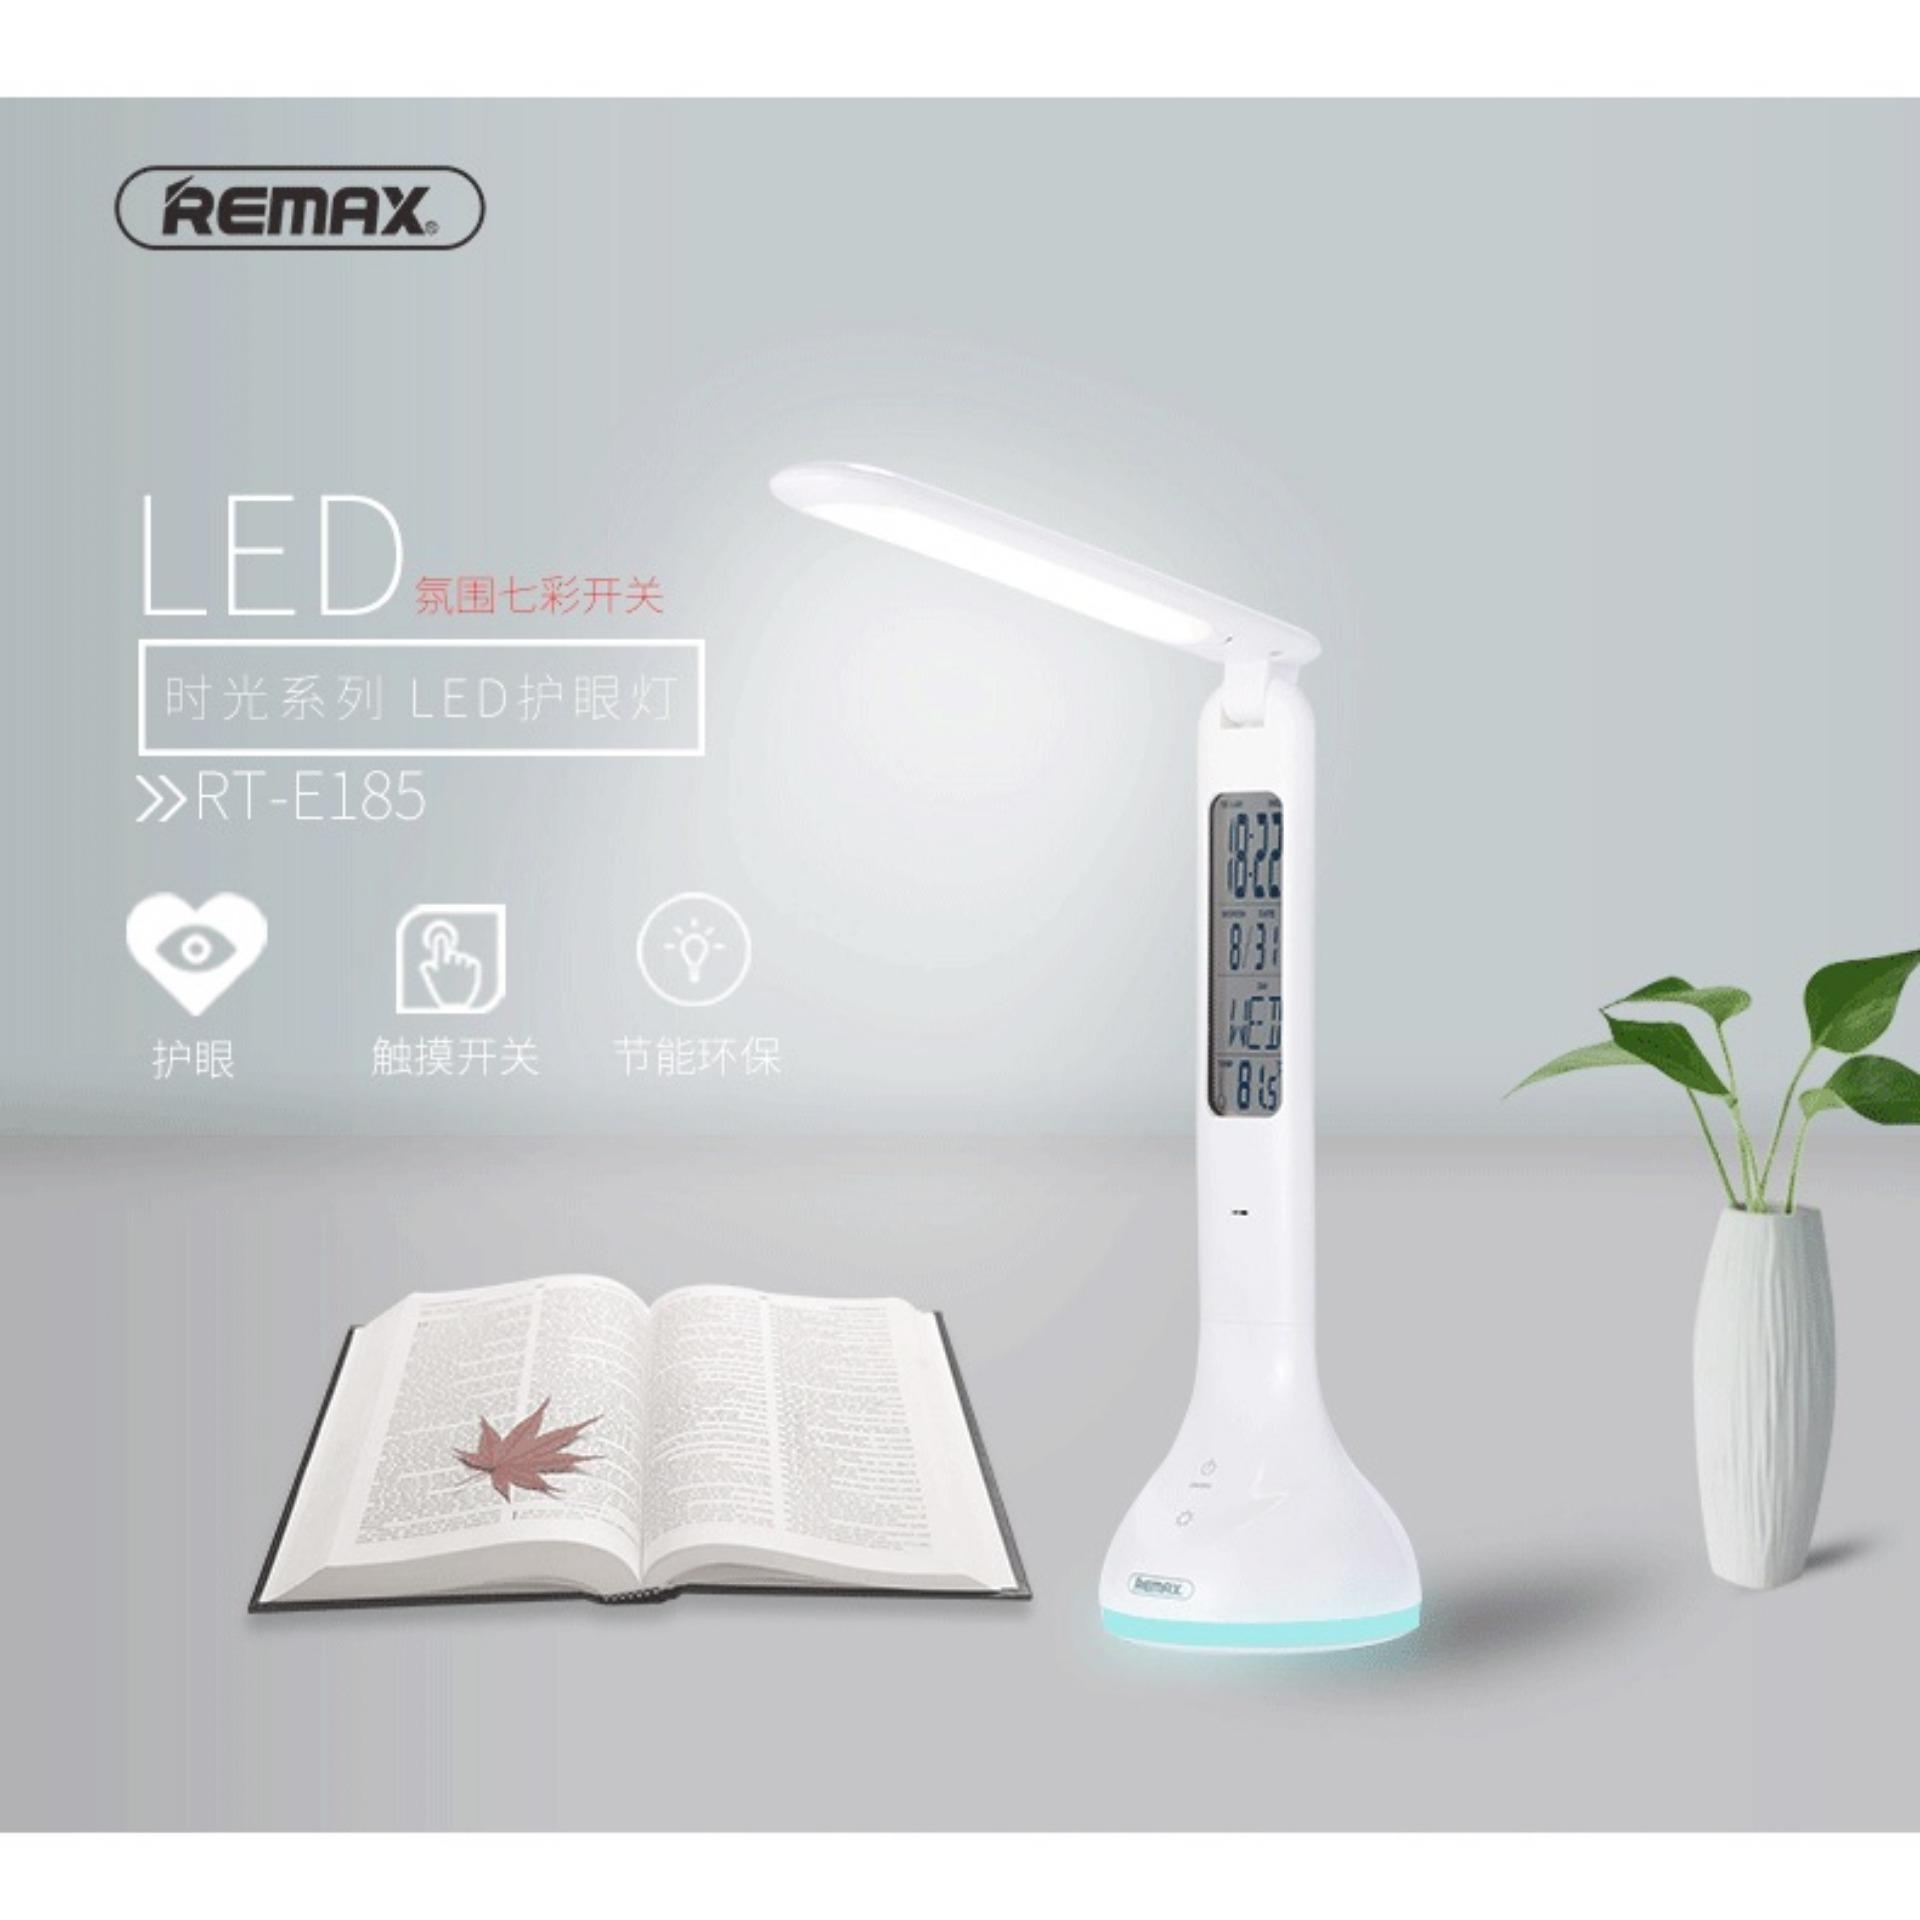 Đèn học công nghệ LED tích điện thông minh chống cận đa chức năng Remax E185